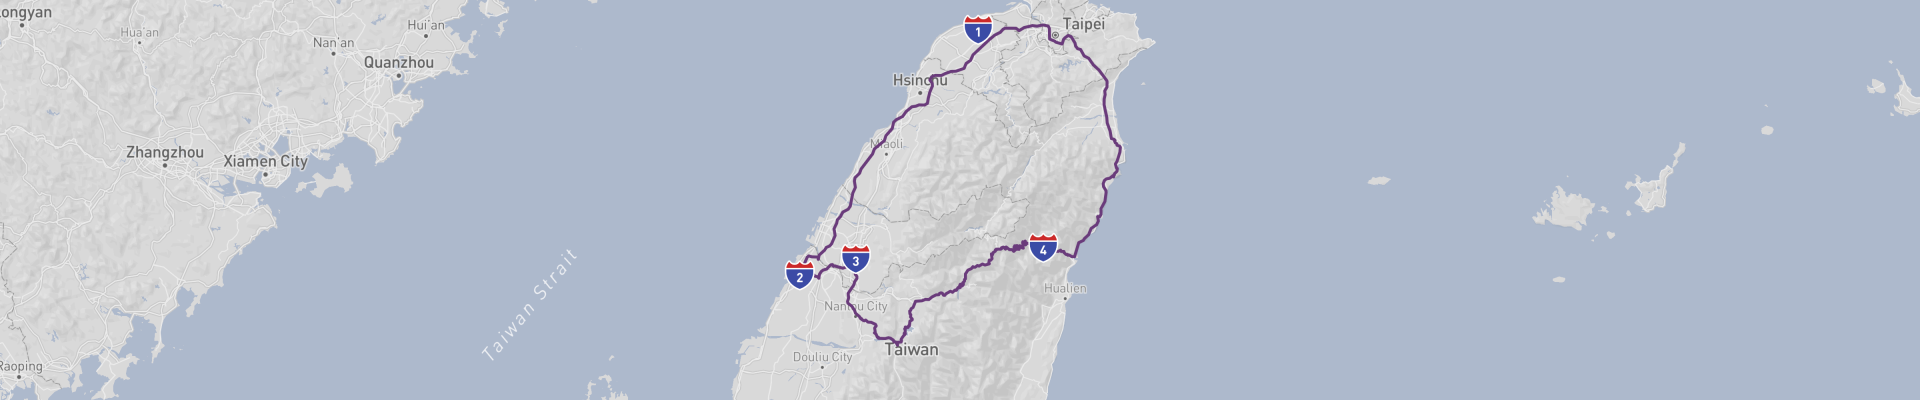 Lo más destacado de Taiwán Viaje por carretera